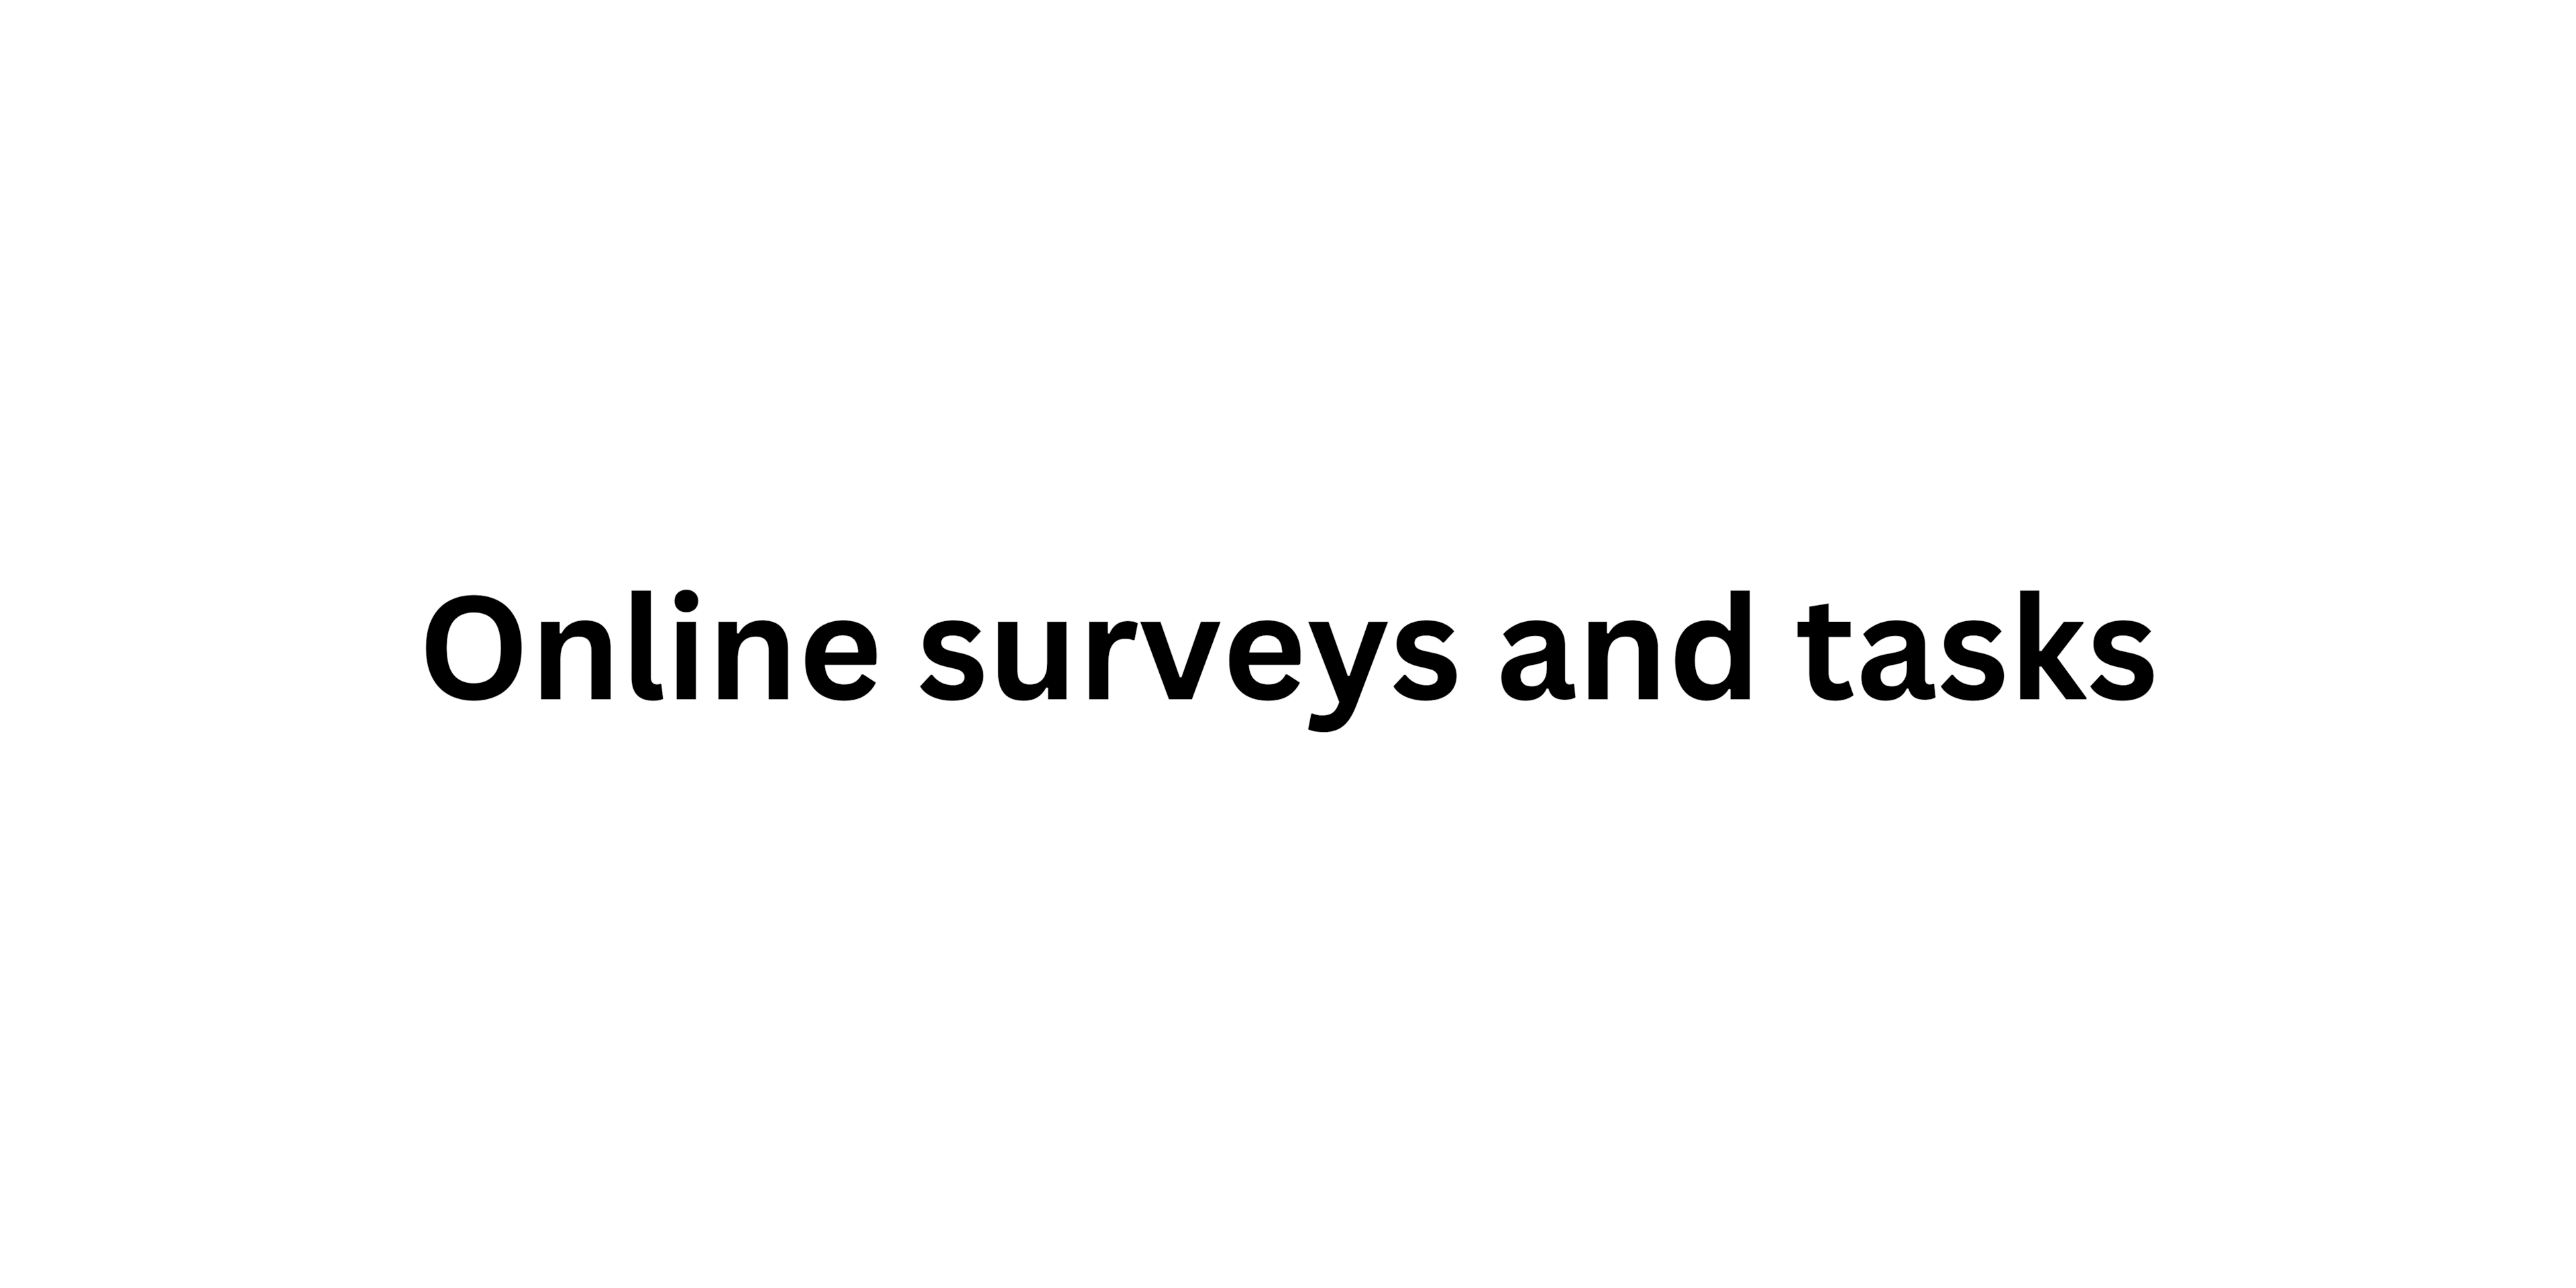 Online surveys and tasks